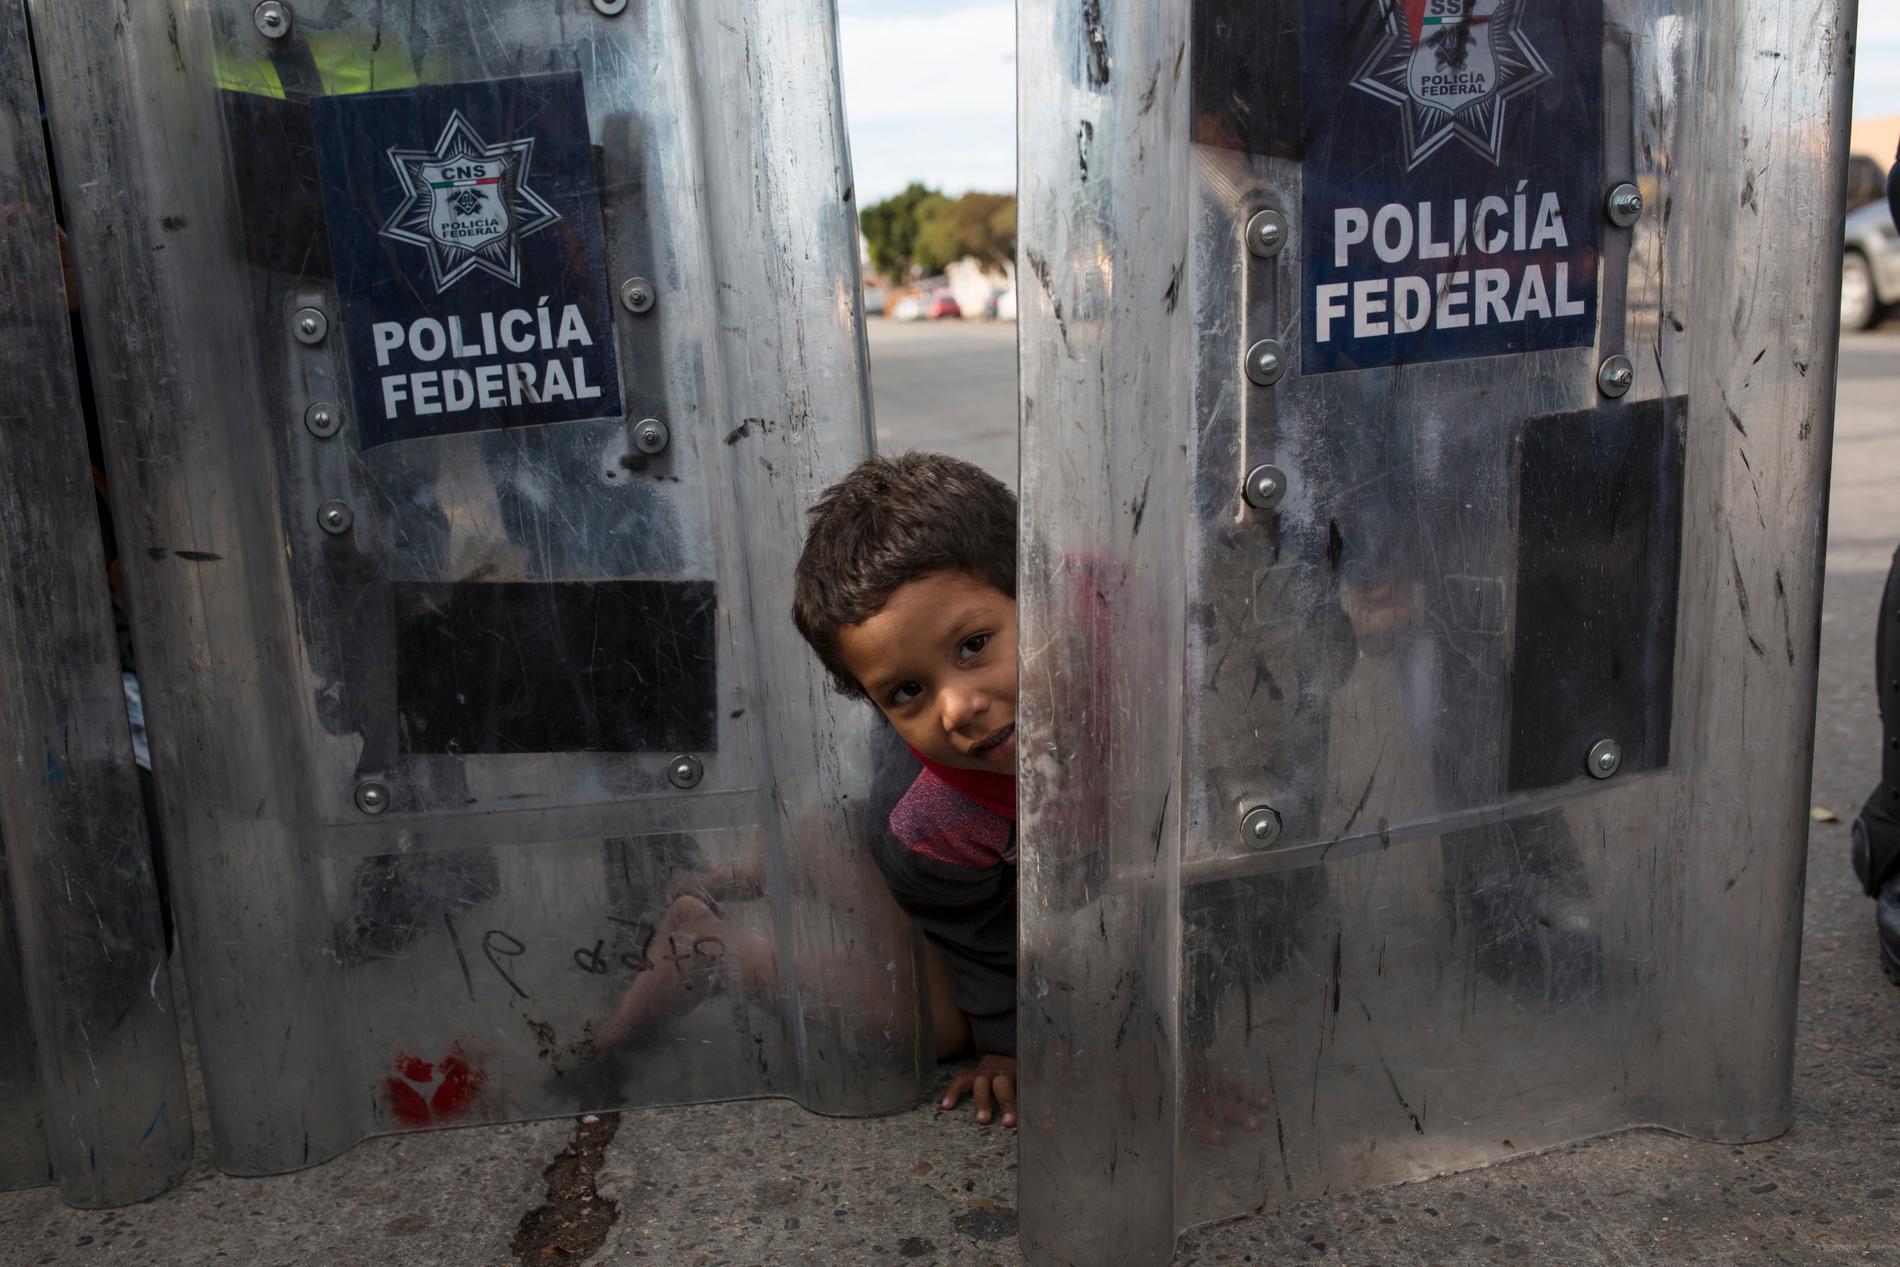 Treåriga Elias Lopez från Honduras leker mellan den mexikanska kravallpolisens sköldar i närheten av gränsövergången El Chaparral i Tijuana, där hundratals migranter under torsdagen genomförde en fredlig manifestation med krav på att bli insläppta i USA.